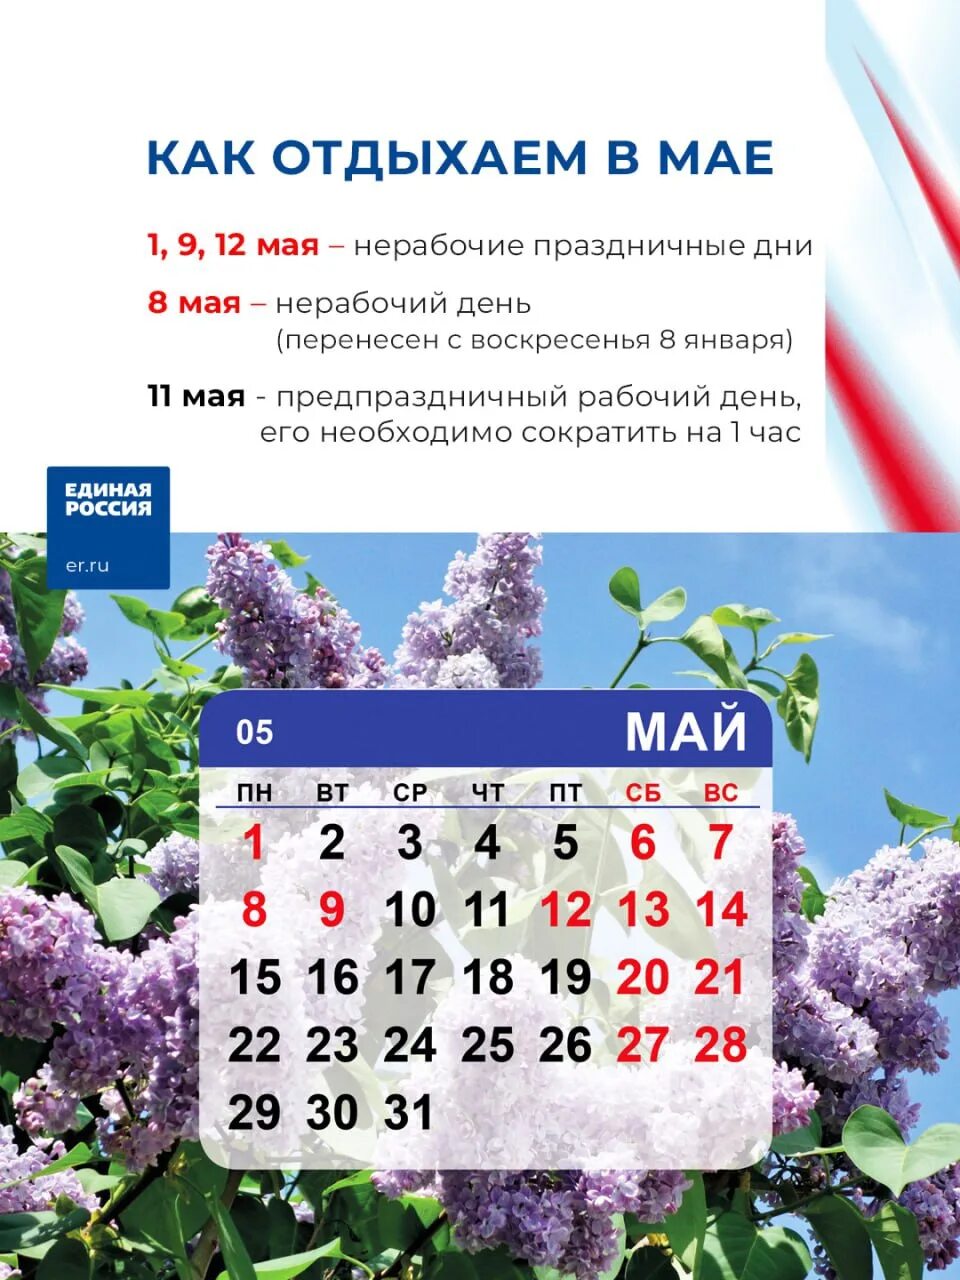 Какие дни отдыха на майские праздники. Праздники в мае. Выходные на майские праздники. Праздники в мае календарь. Рабочие и праздничные дни майские.